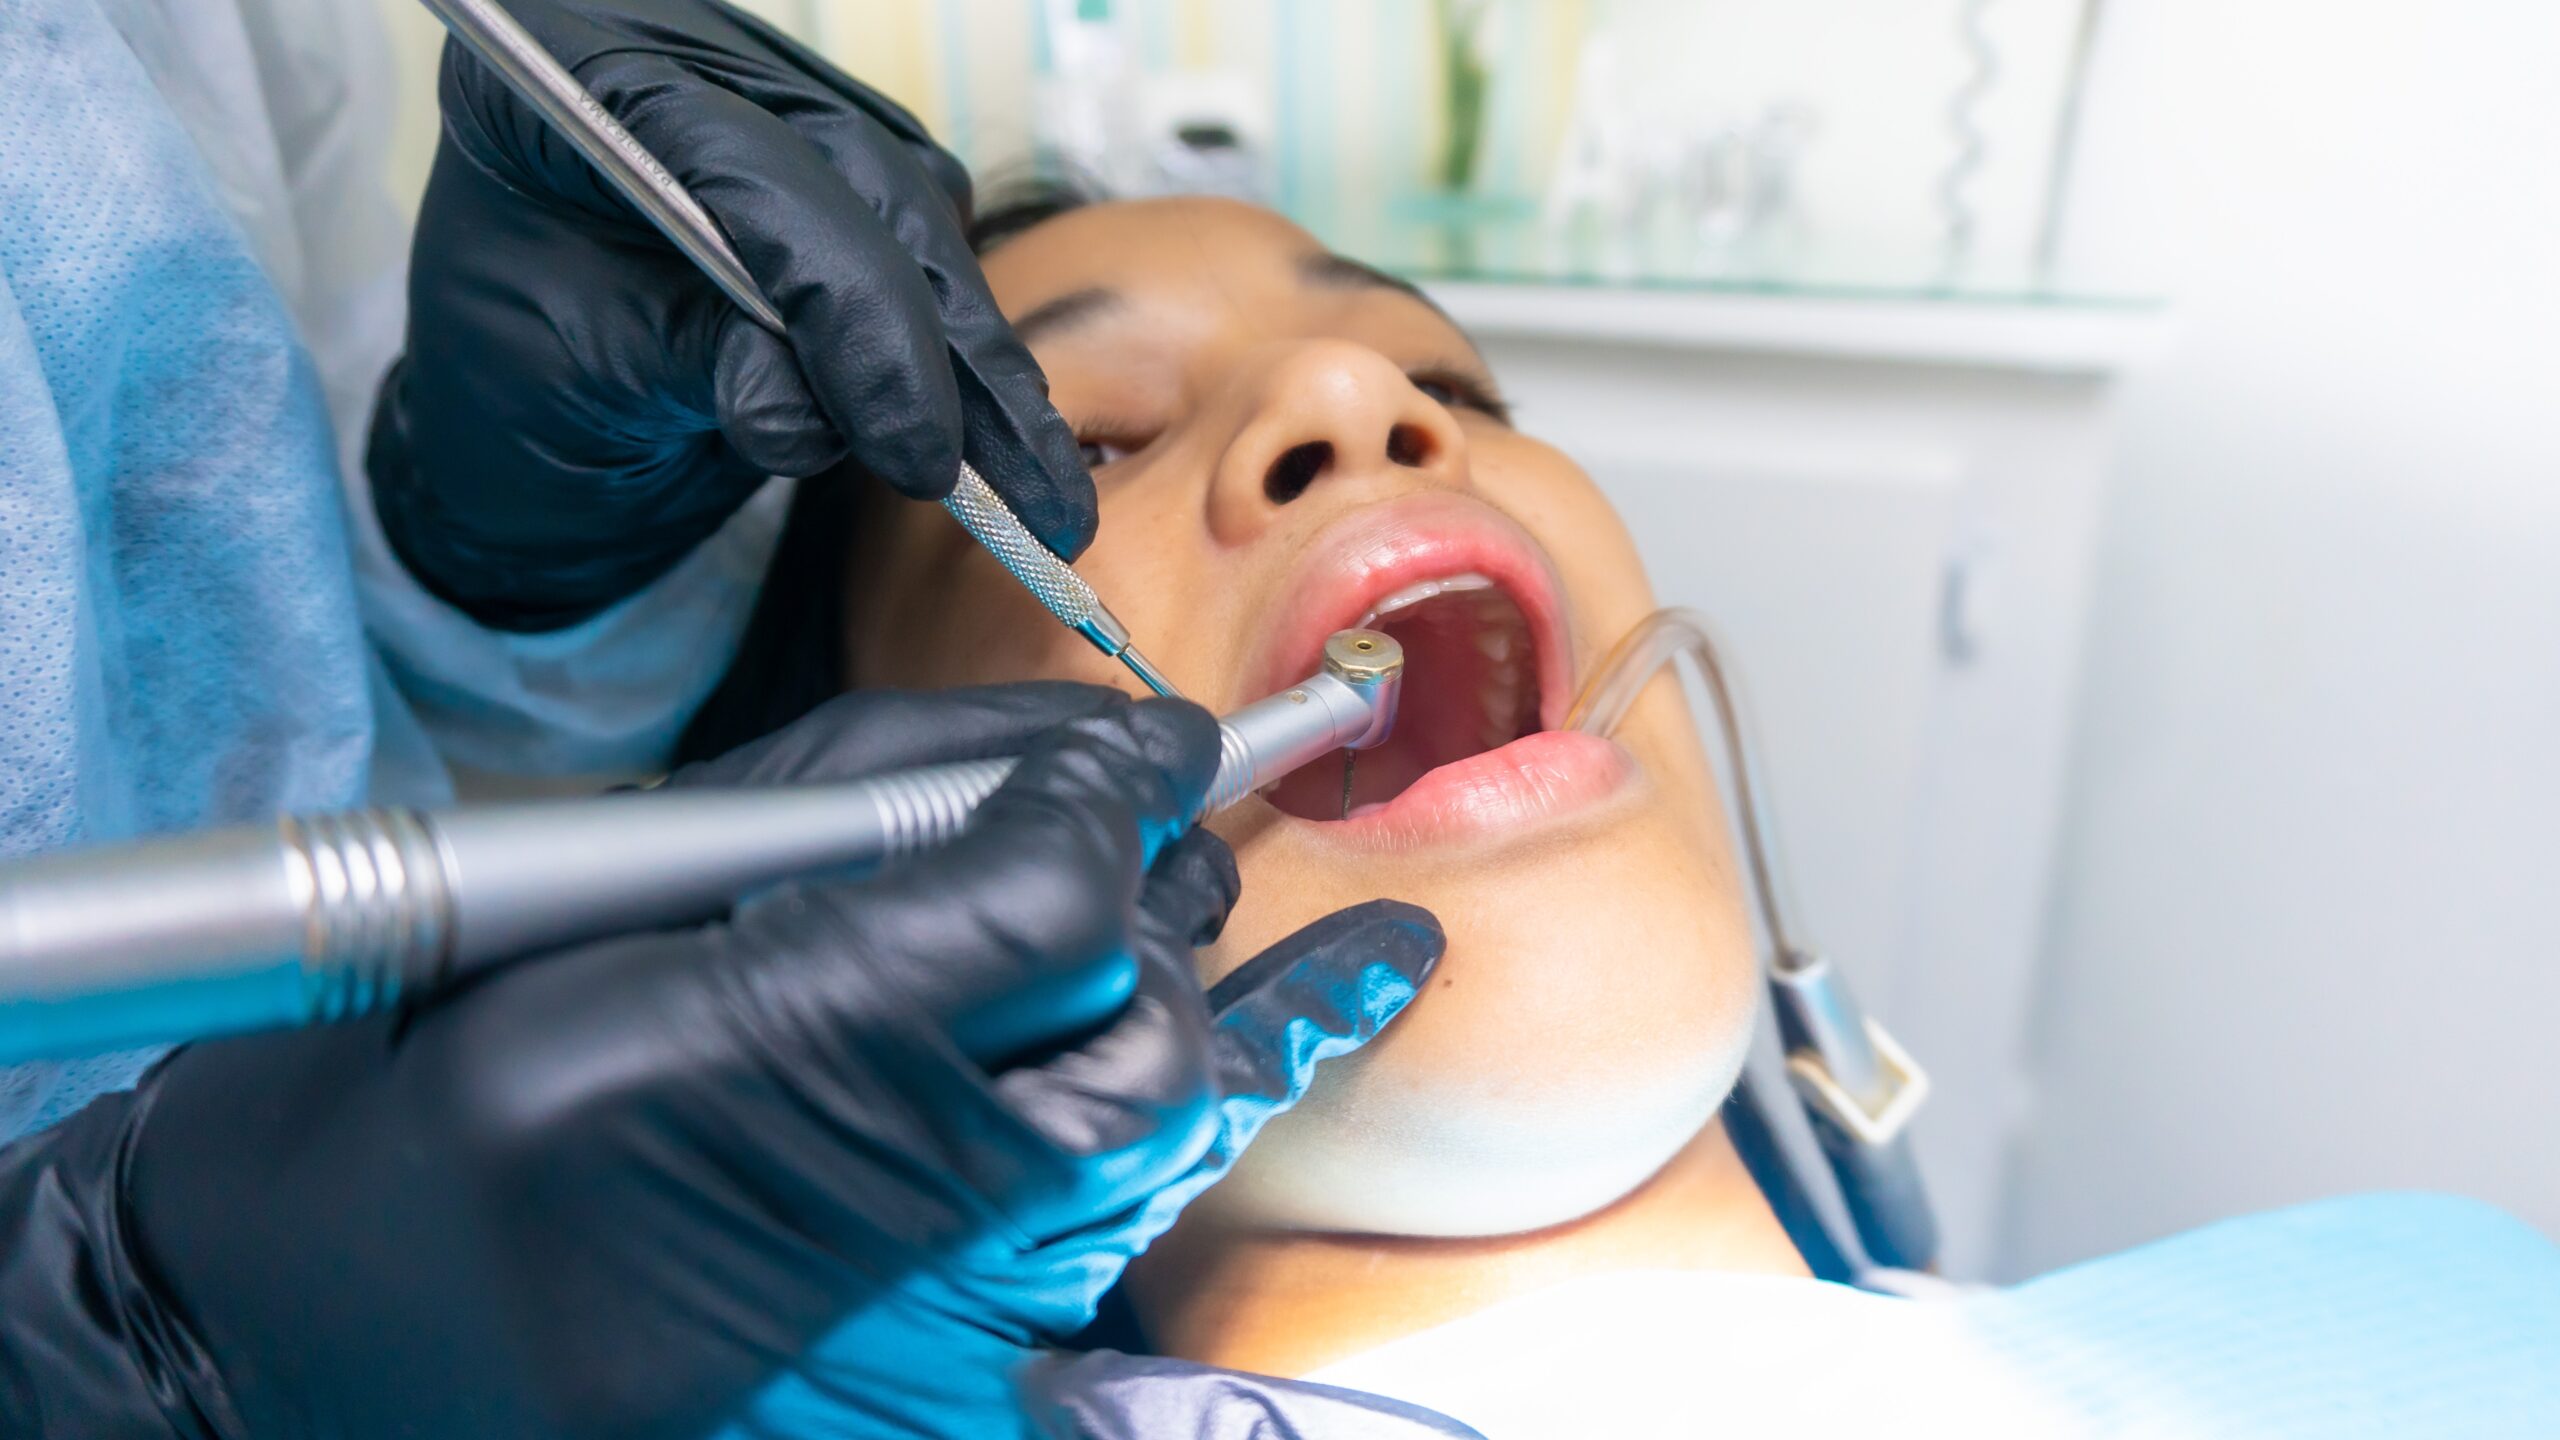 Broken Tooth Repair in Ladson SC - Experienced Emergency Dentist Open